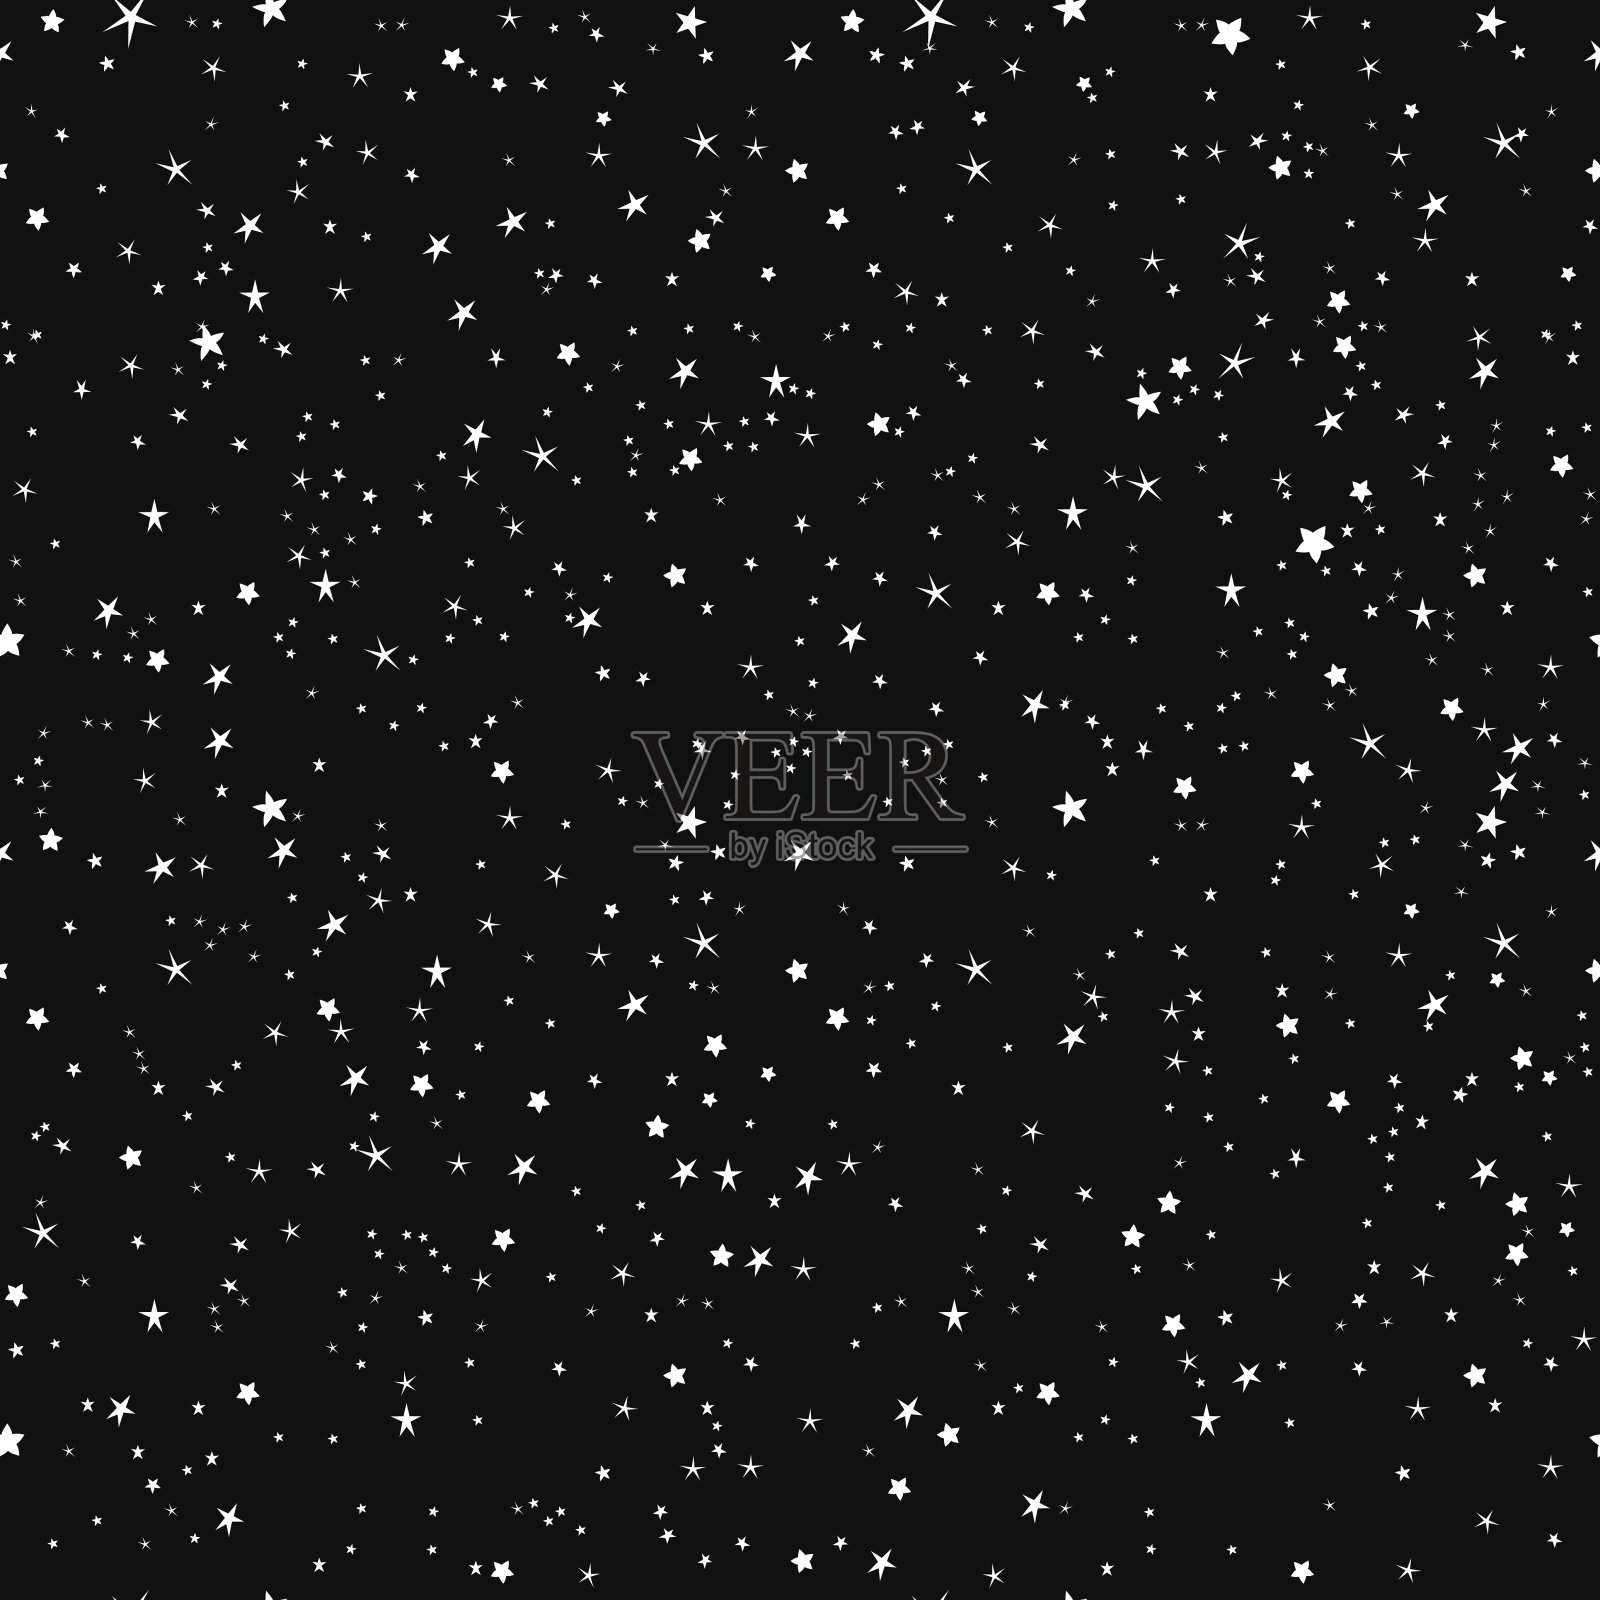 太空星星黑白无缝矢量图案。背景图片素材